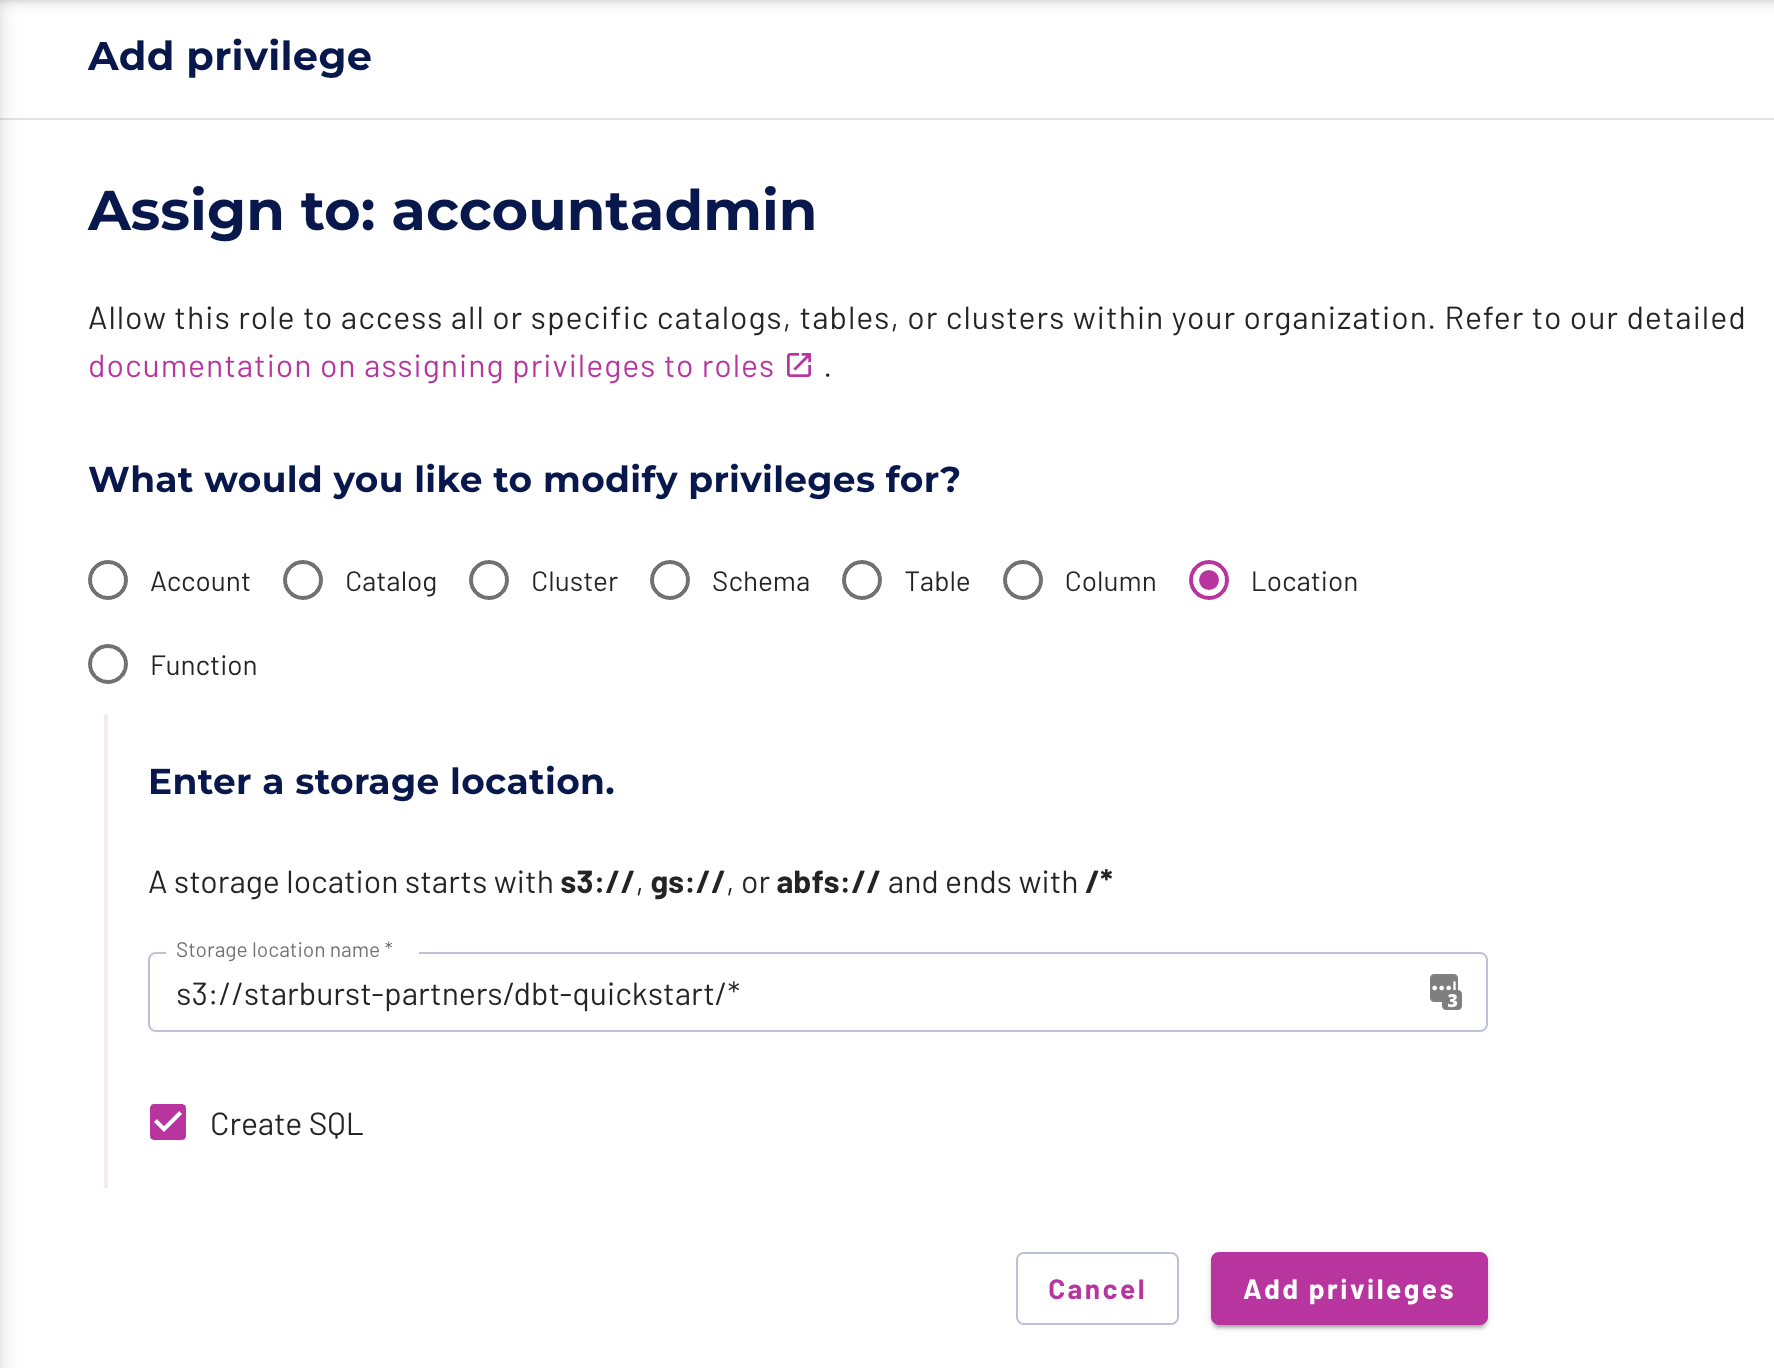 Add privilege to accountadmin role